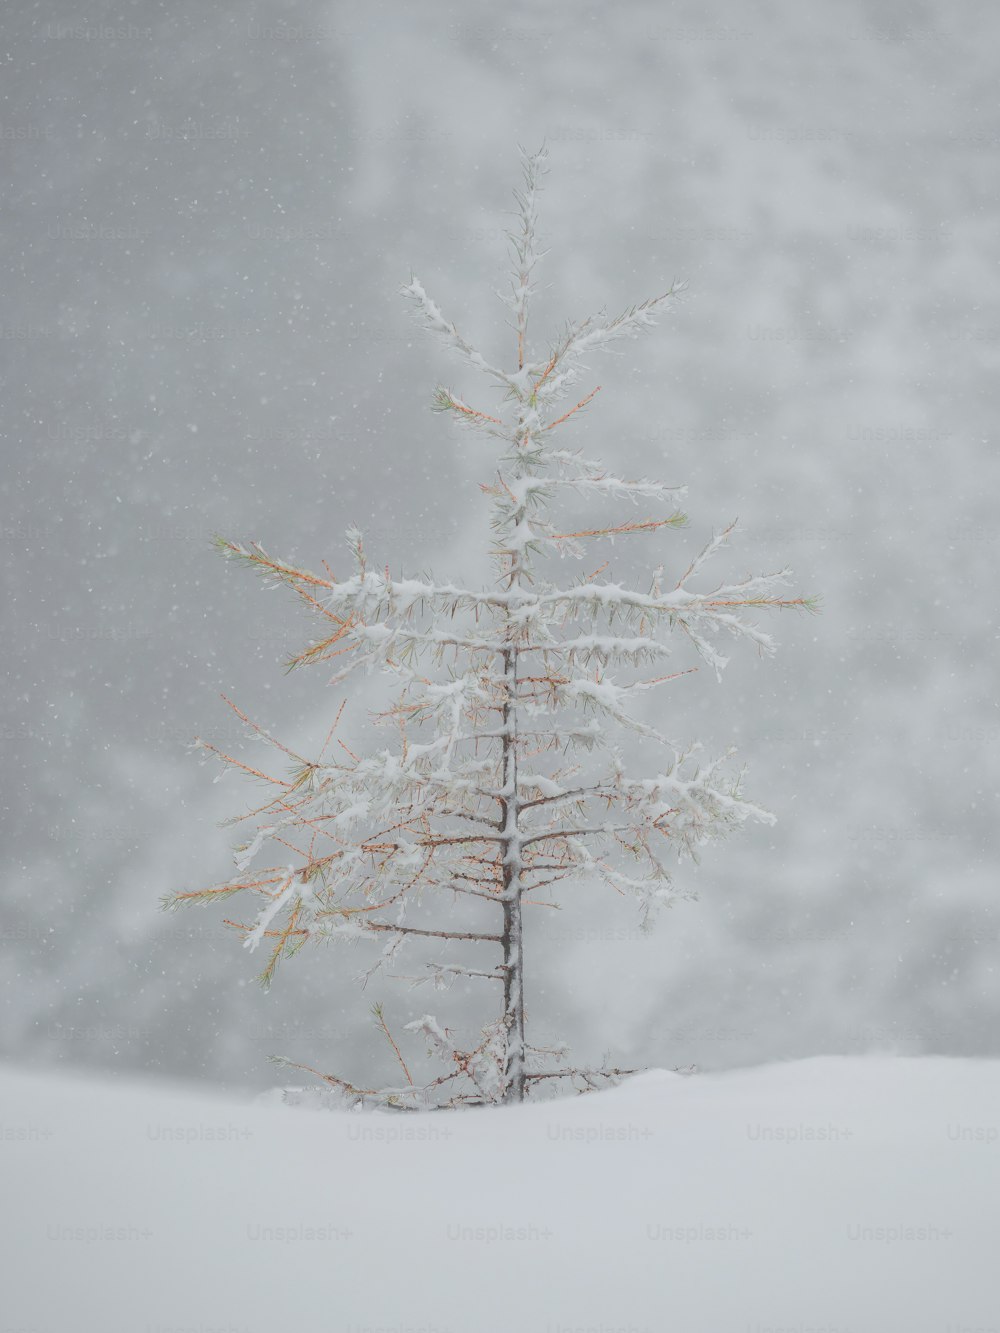 uma árvore coberta de neve no meio de um campo nevado